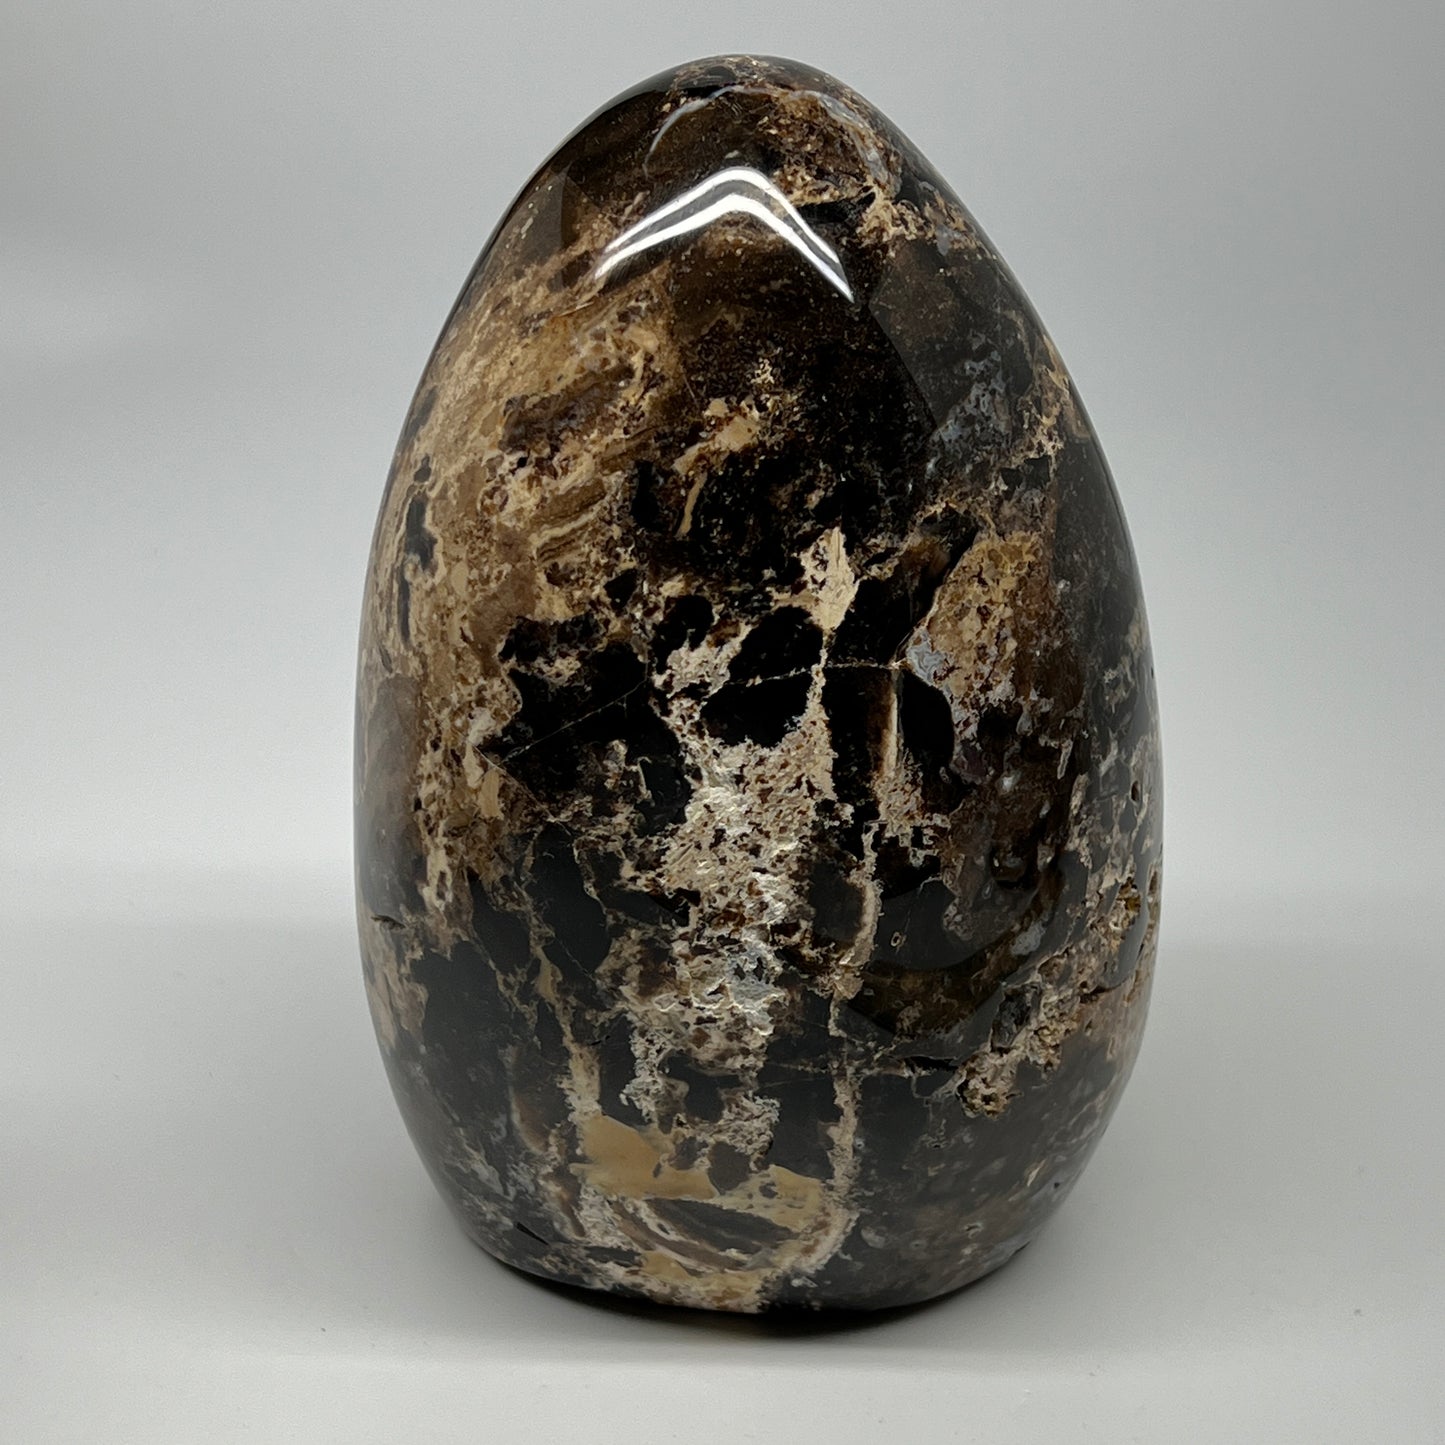 3560g,8"x5"x4.2" Black Opal Freeform Polished Gemstone @Madagascar,B21105